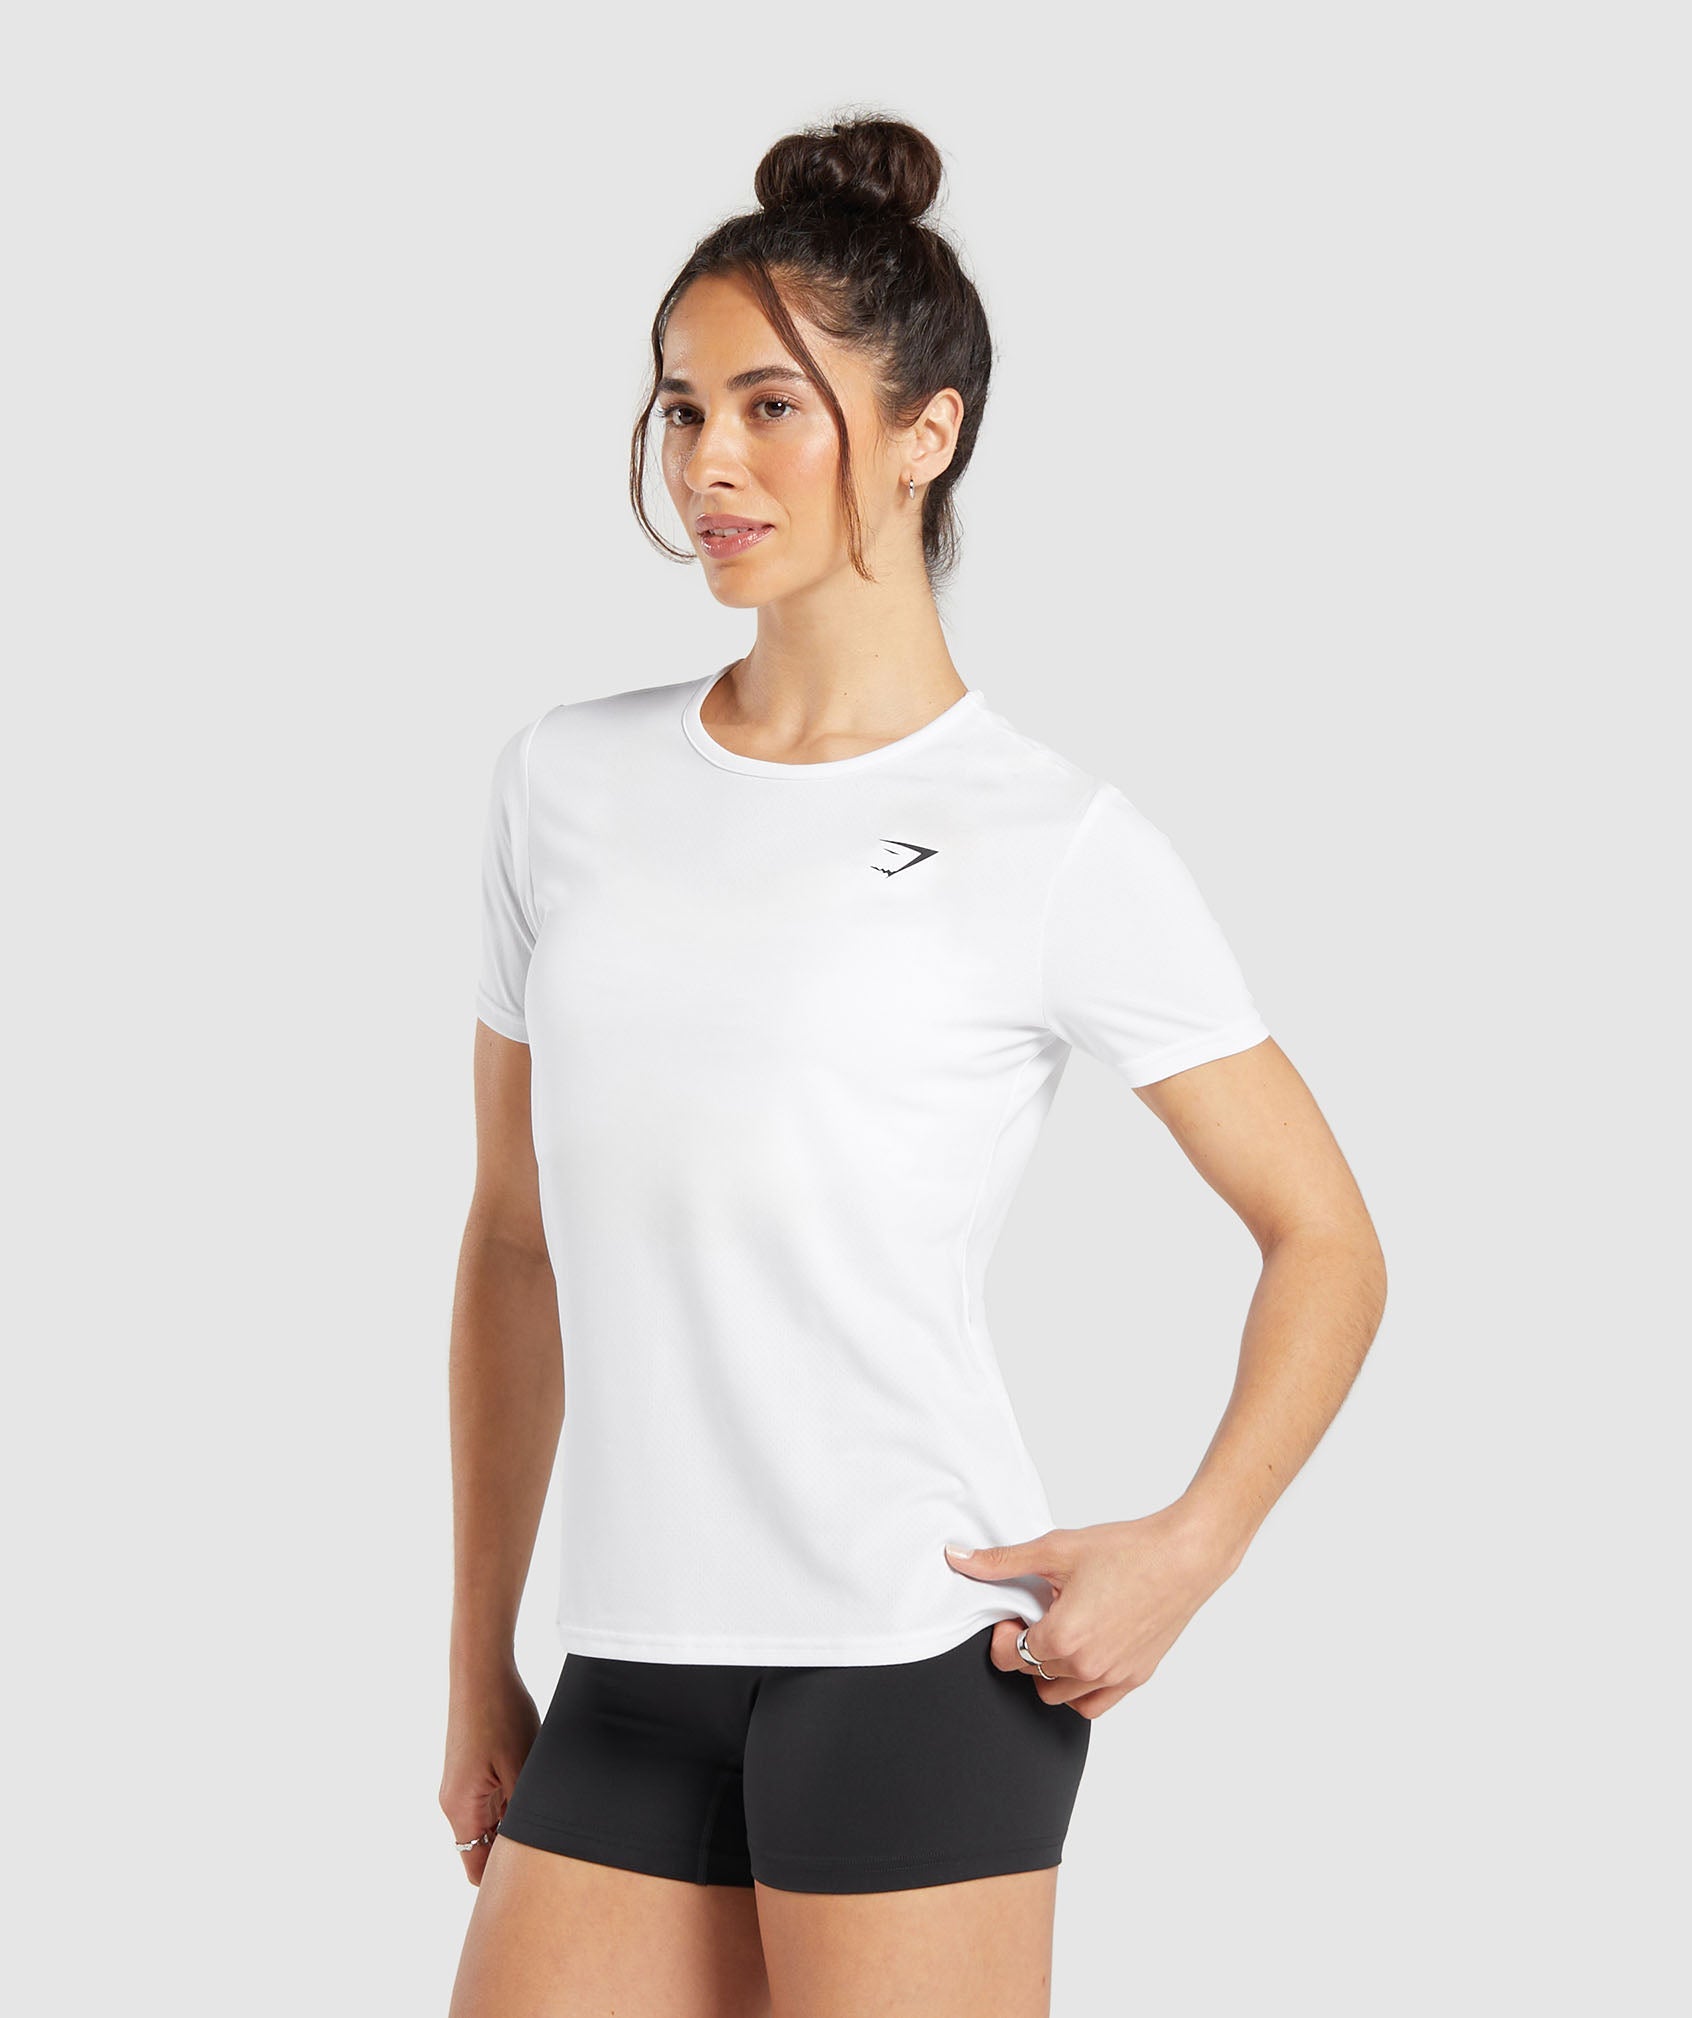 Training T-Shirt in White